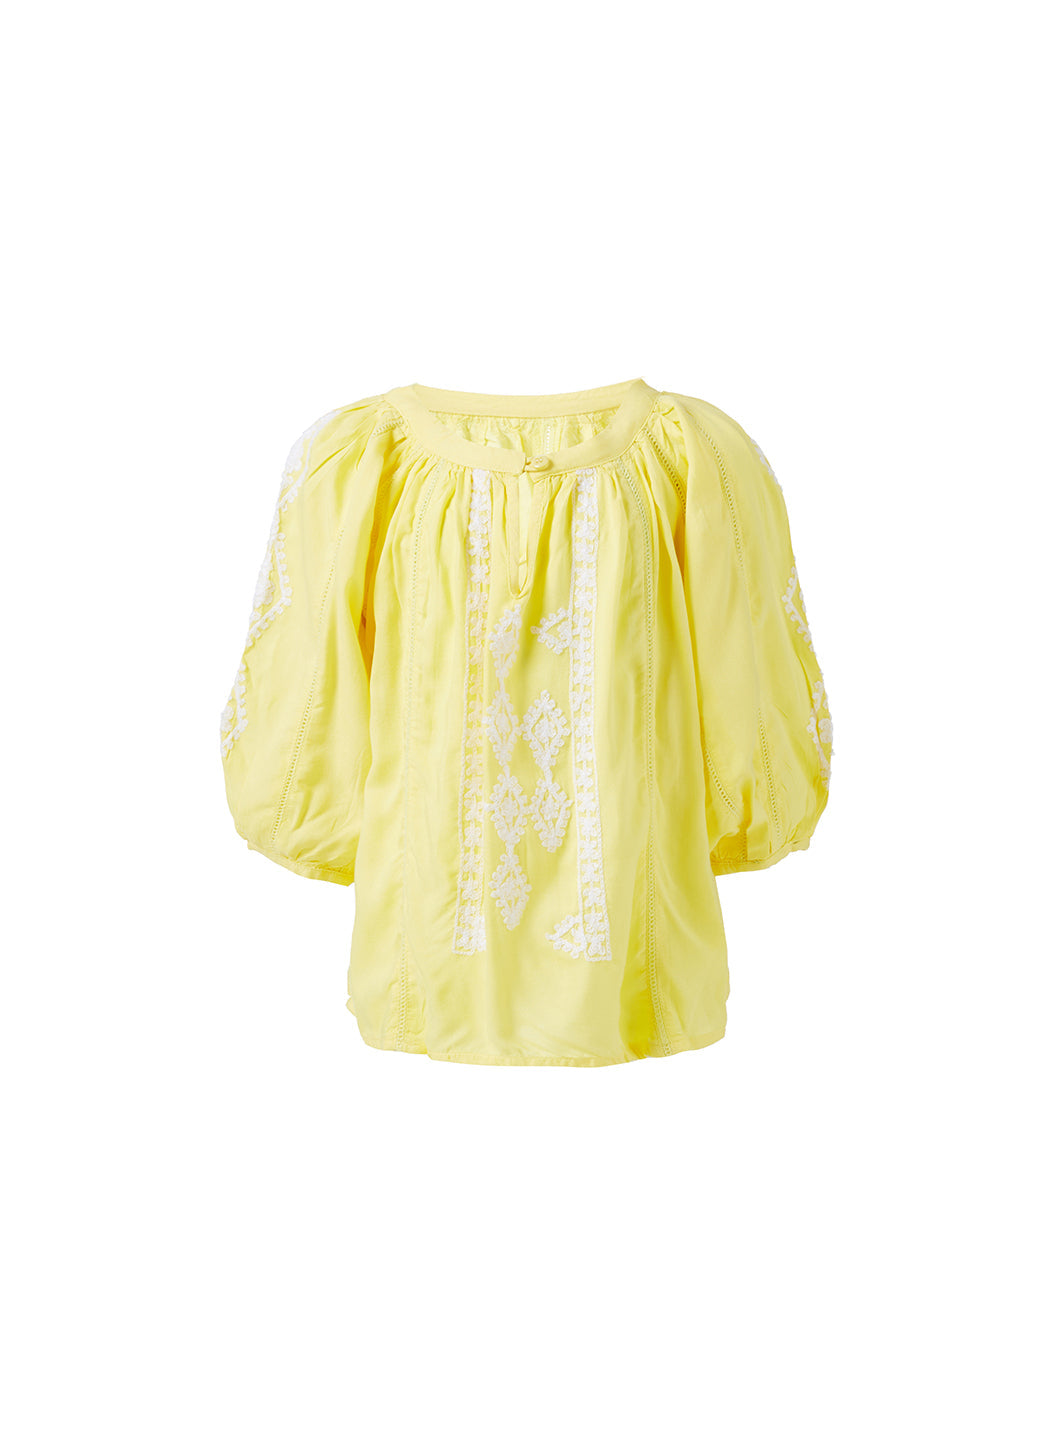 Girls Aliya Yellow/White Shirt